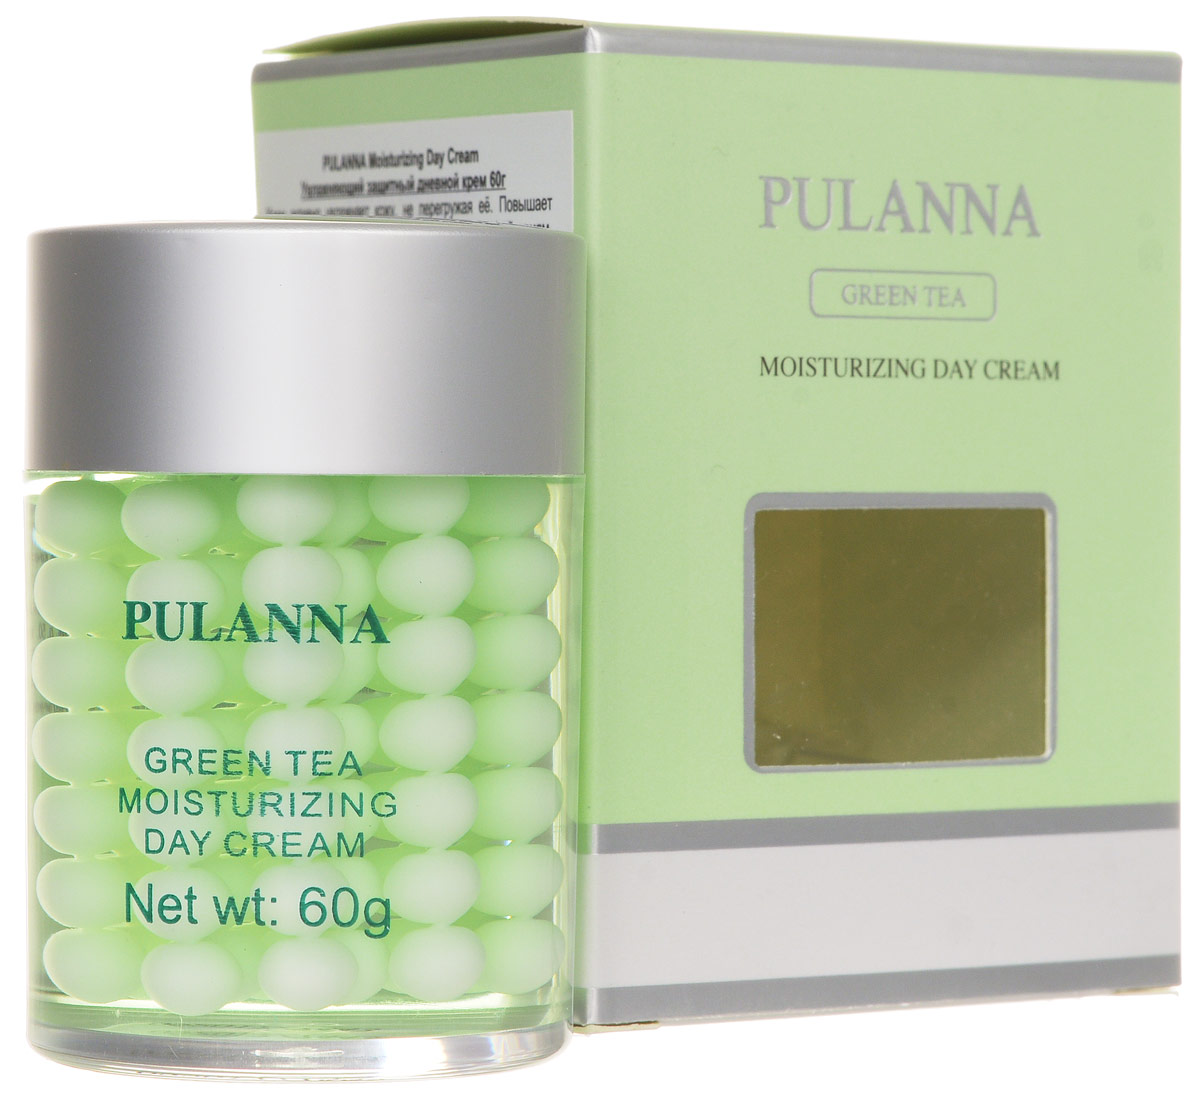 купить Pulanna Увлажняющий защитный дневной крем на основе зеленого чая-Moisturizing Day Cream 60 г - заказ и доставка в Москве и Санкт-Петербурге